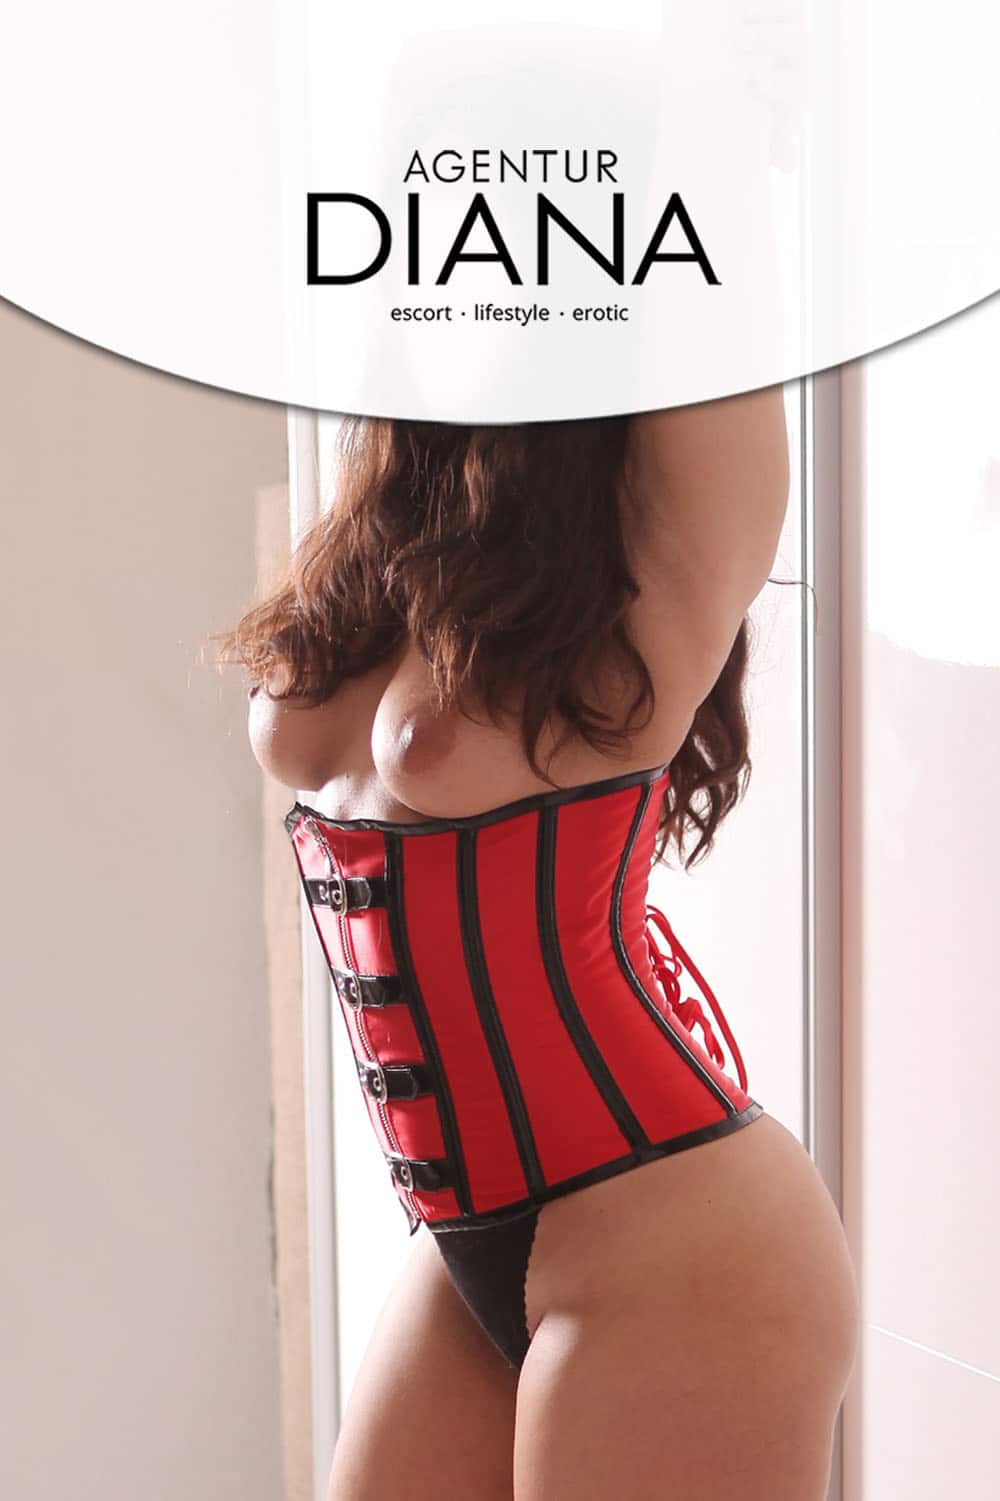 Bianca Escort Agentur Diana